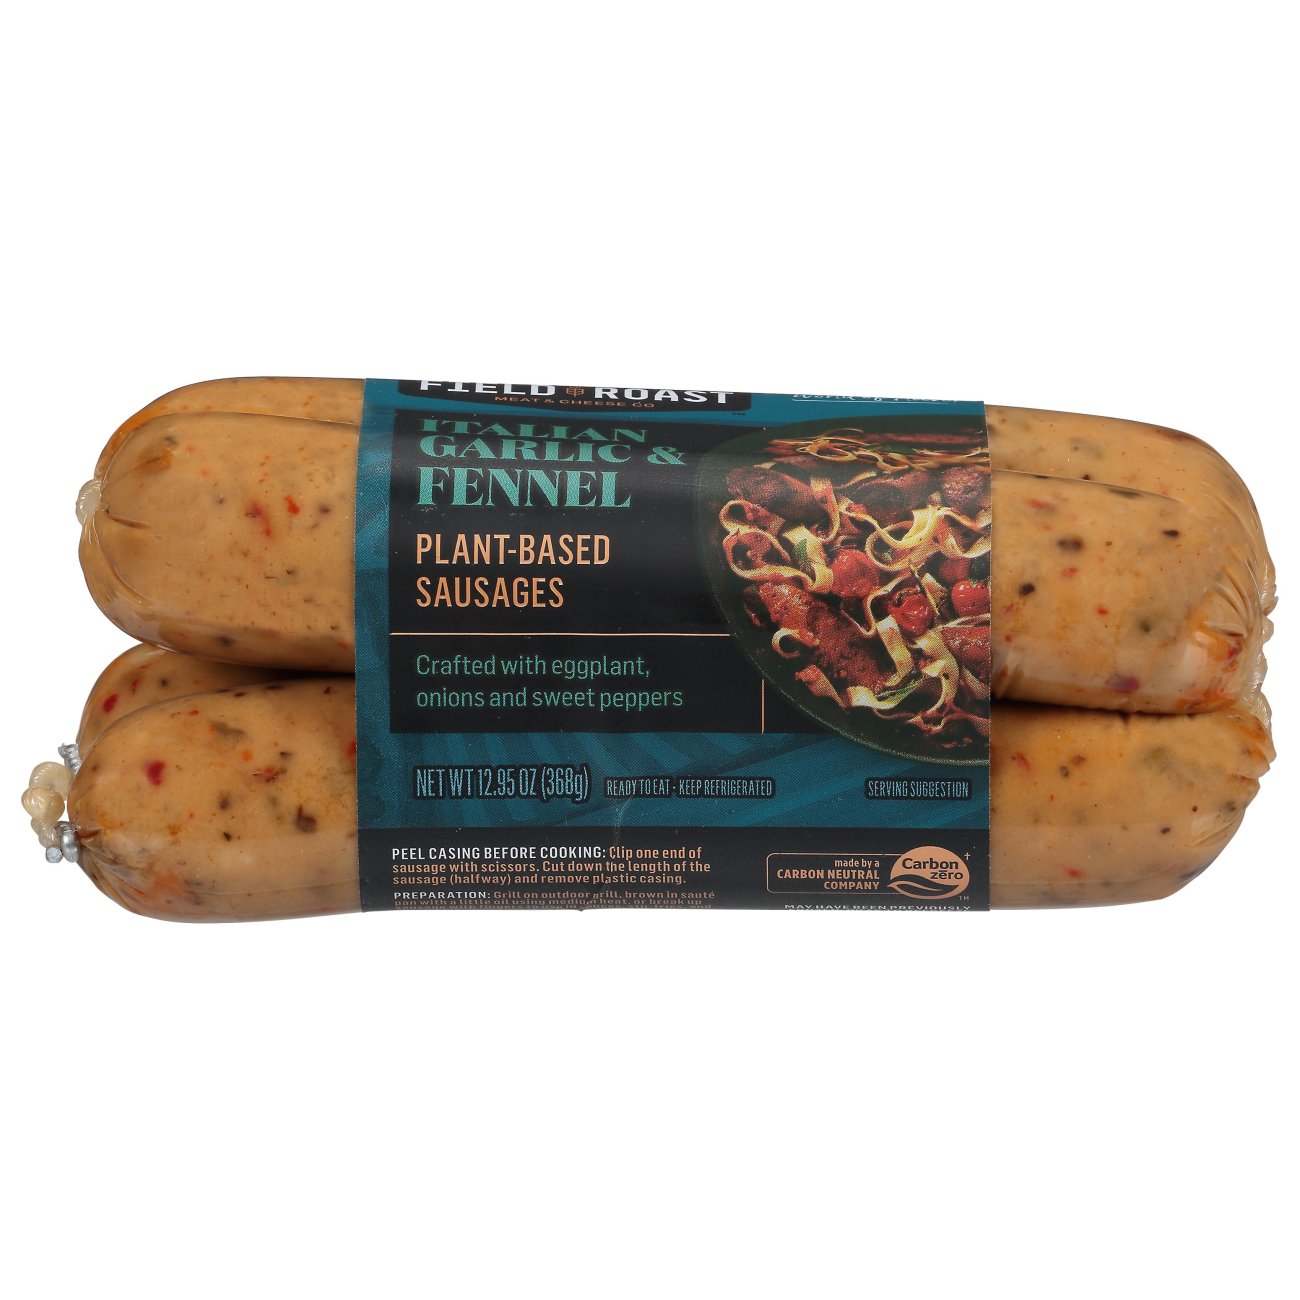 Field Roast Italian Garlic & Fennel Plant-Based Sausages